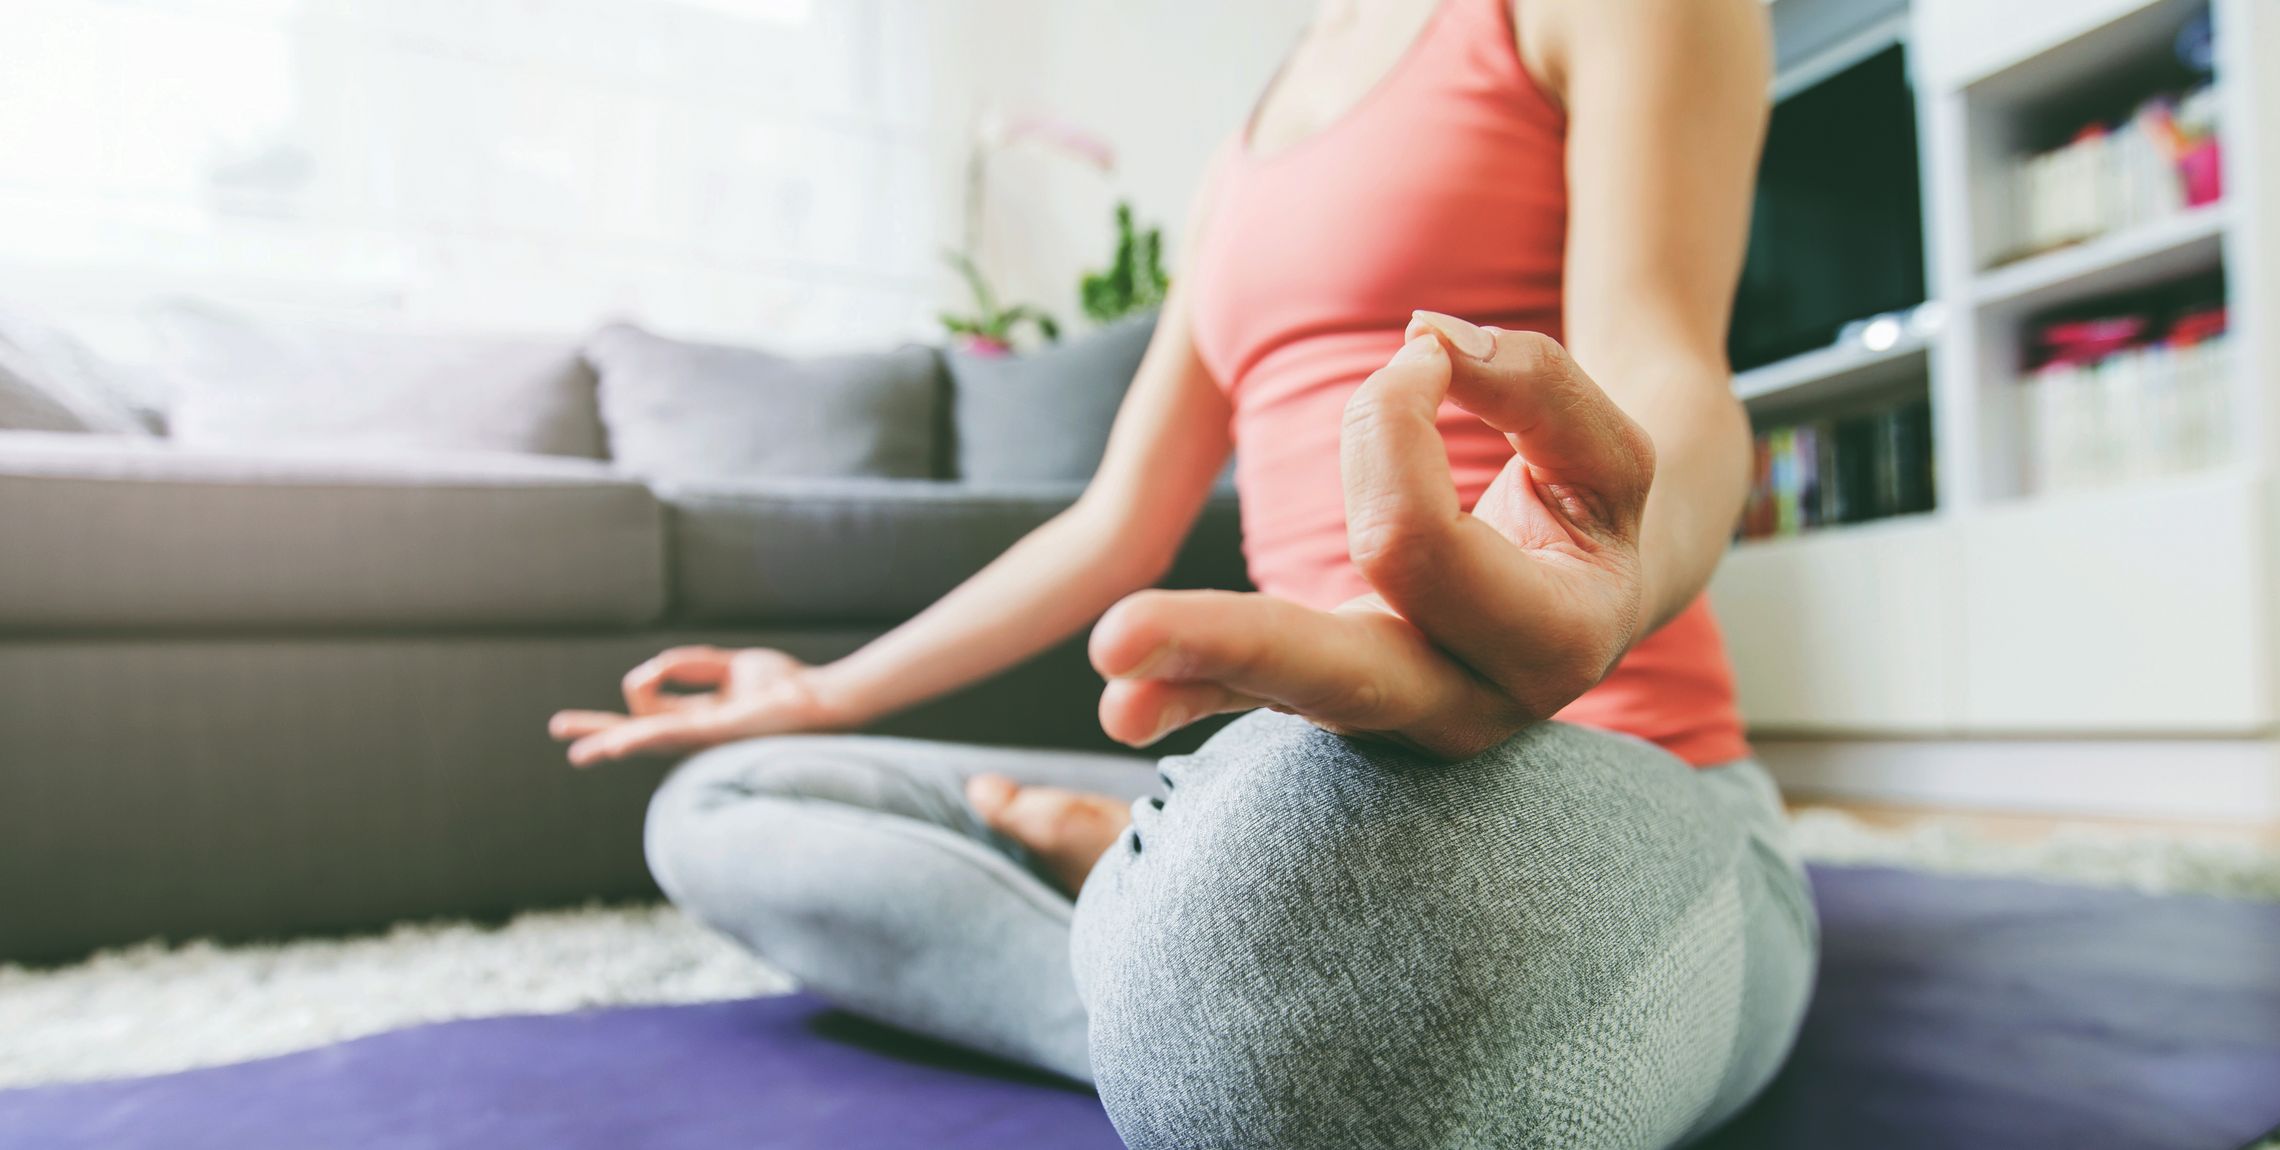 Frau sitzt entspannt im Yoga-Sitz auf einer Matte im Wohnzimmer